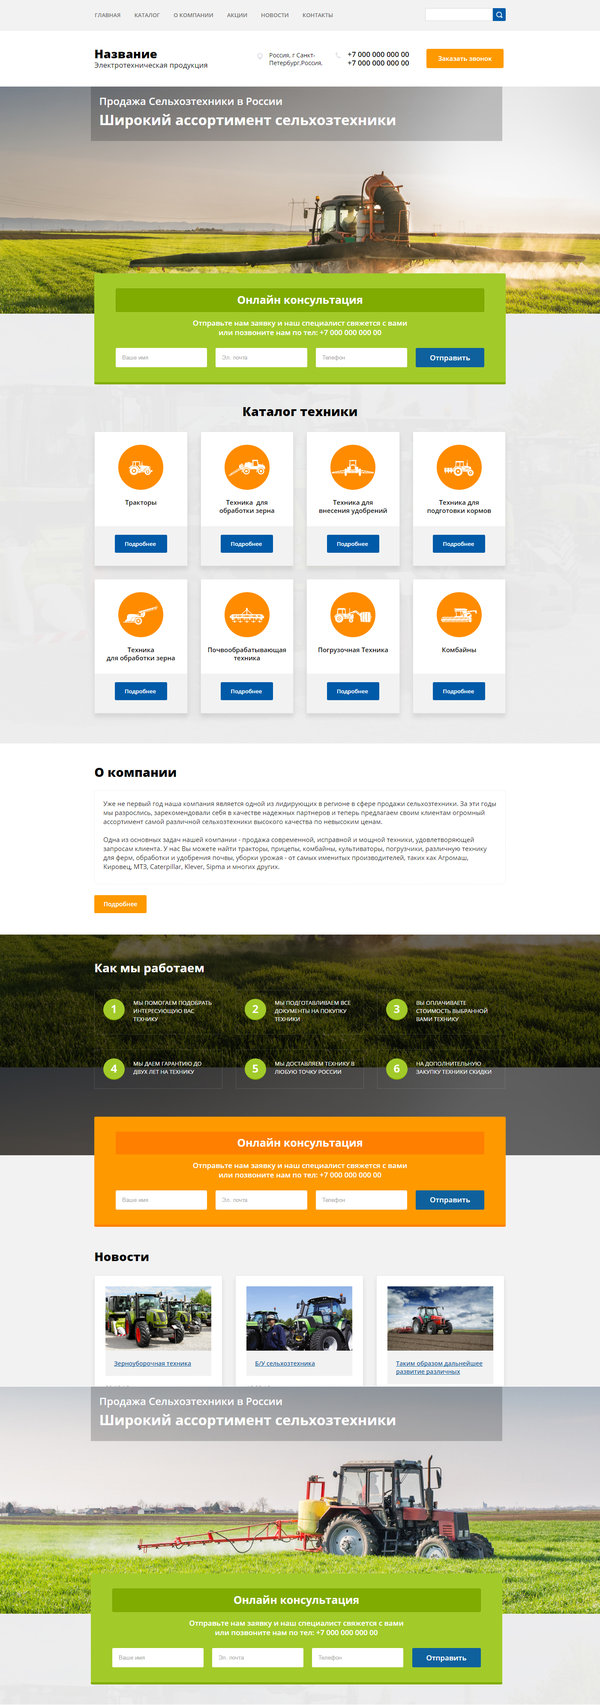 Готовый Сайт-Бизнес № 1593938 - Сельхозтехника (Десктопная версия)